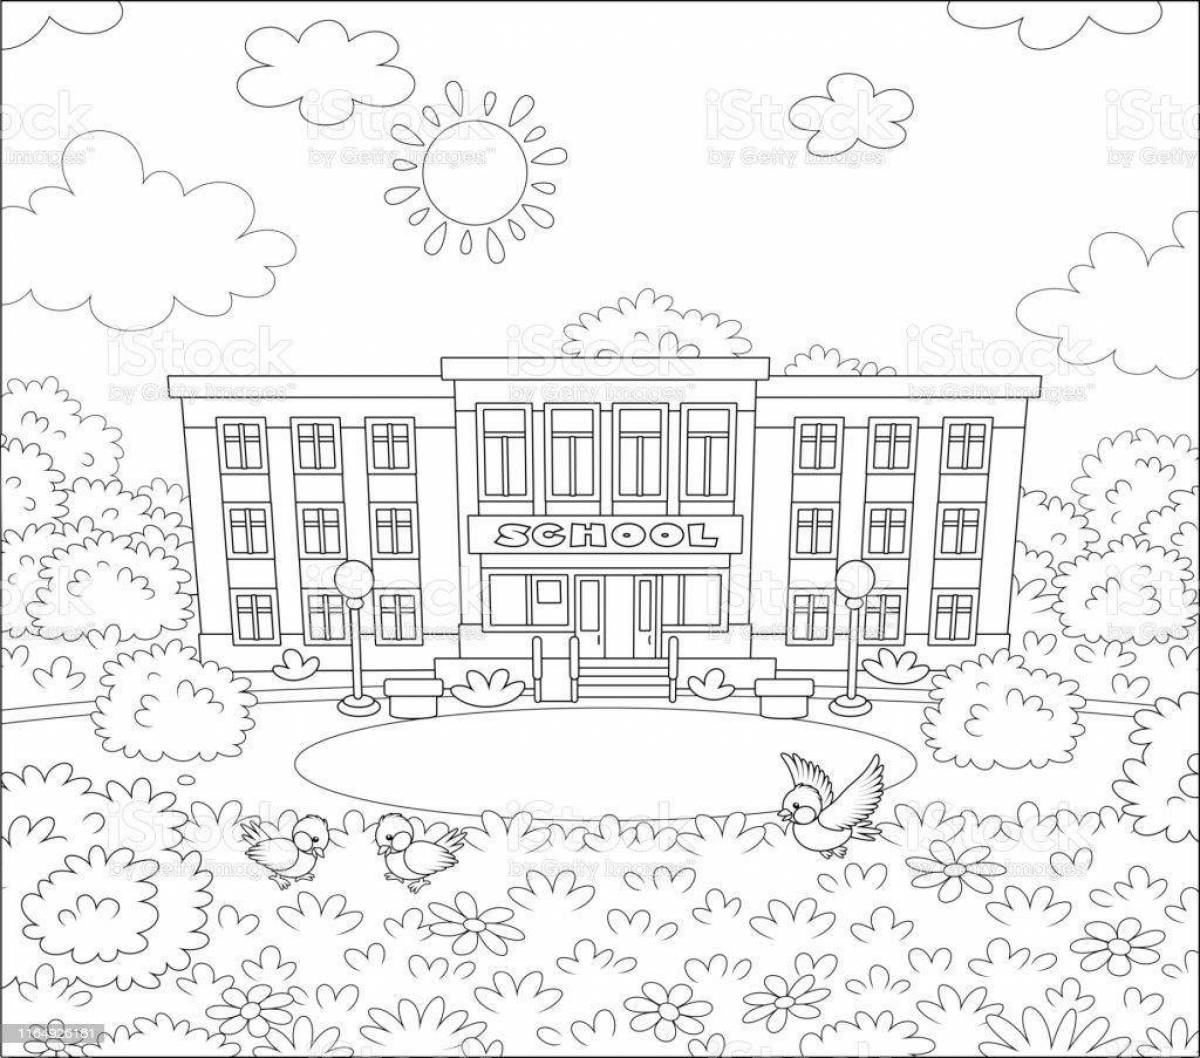 100 000 векторов и графики по запросу Школа здание раскраска доступны в рамках роялти-фри лицензии